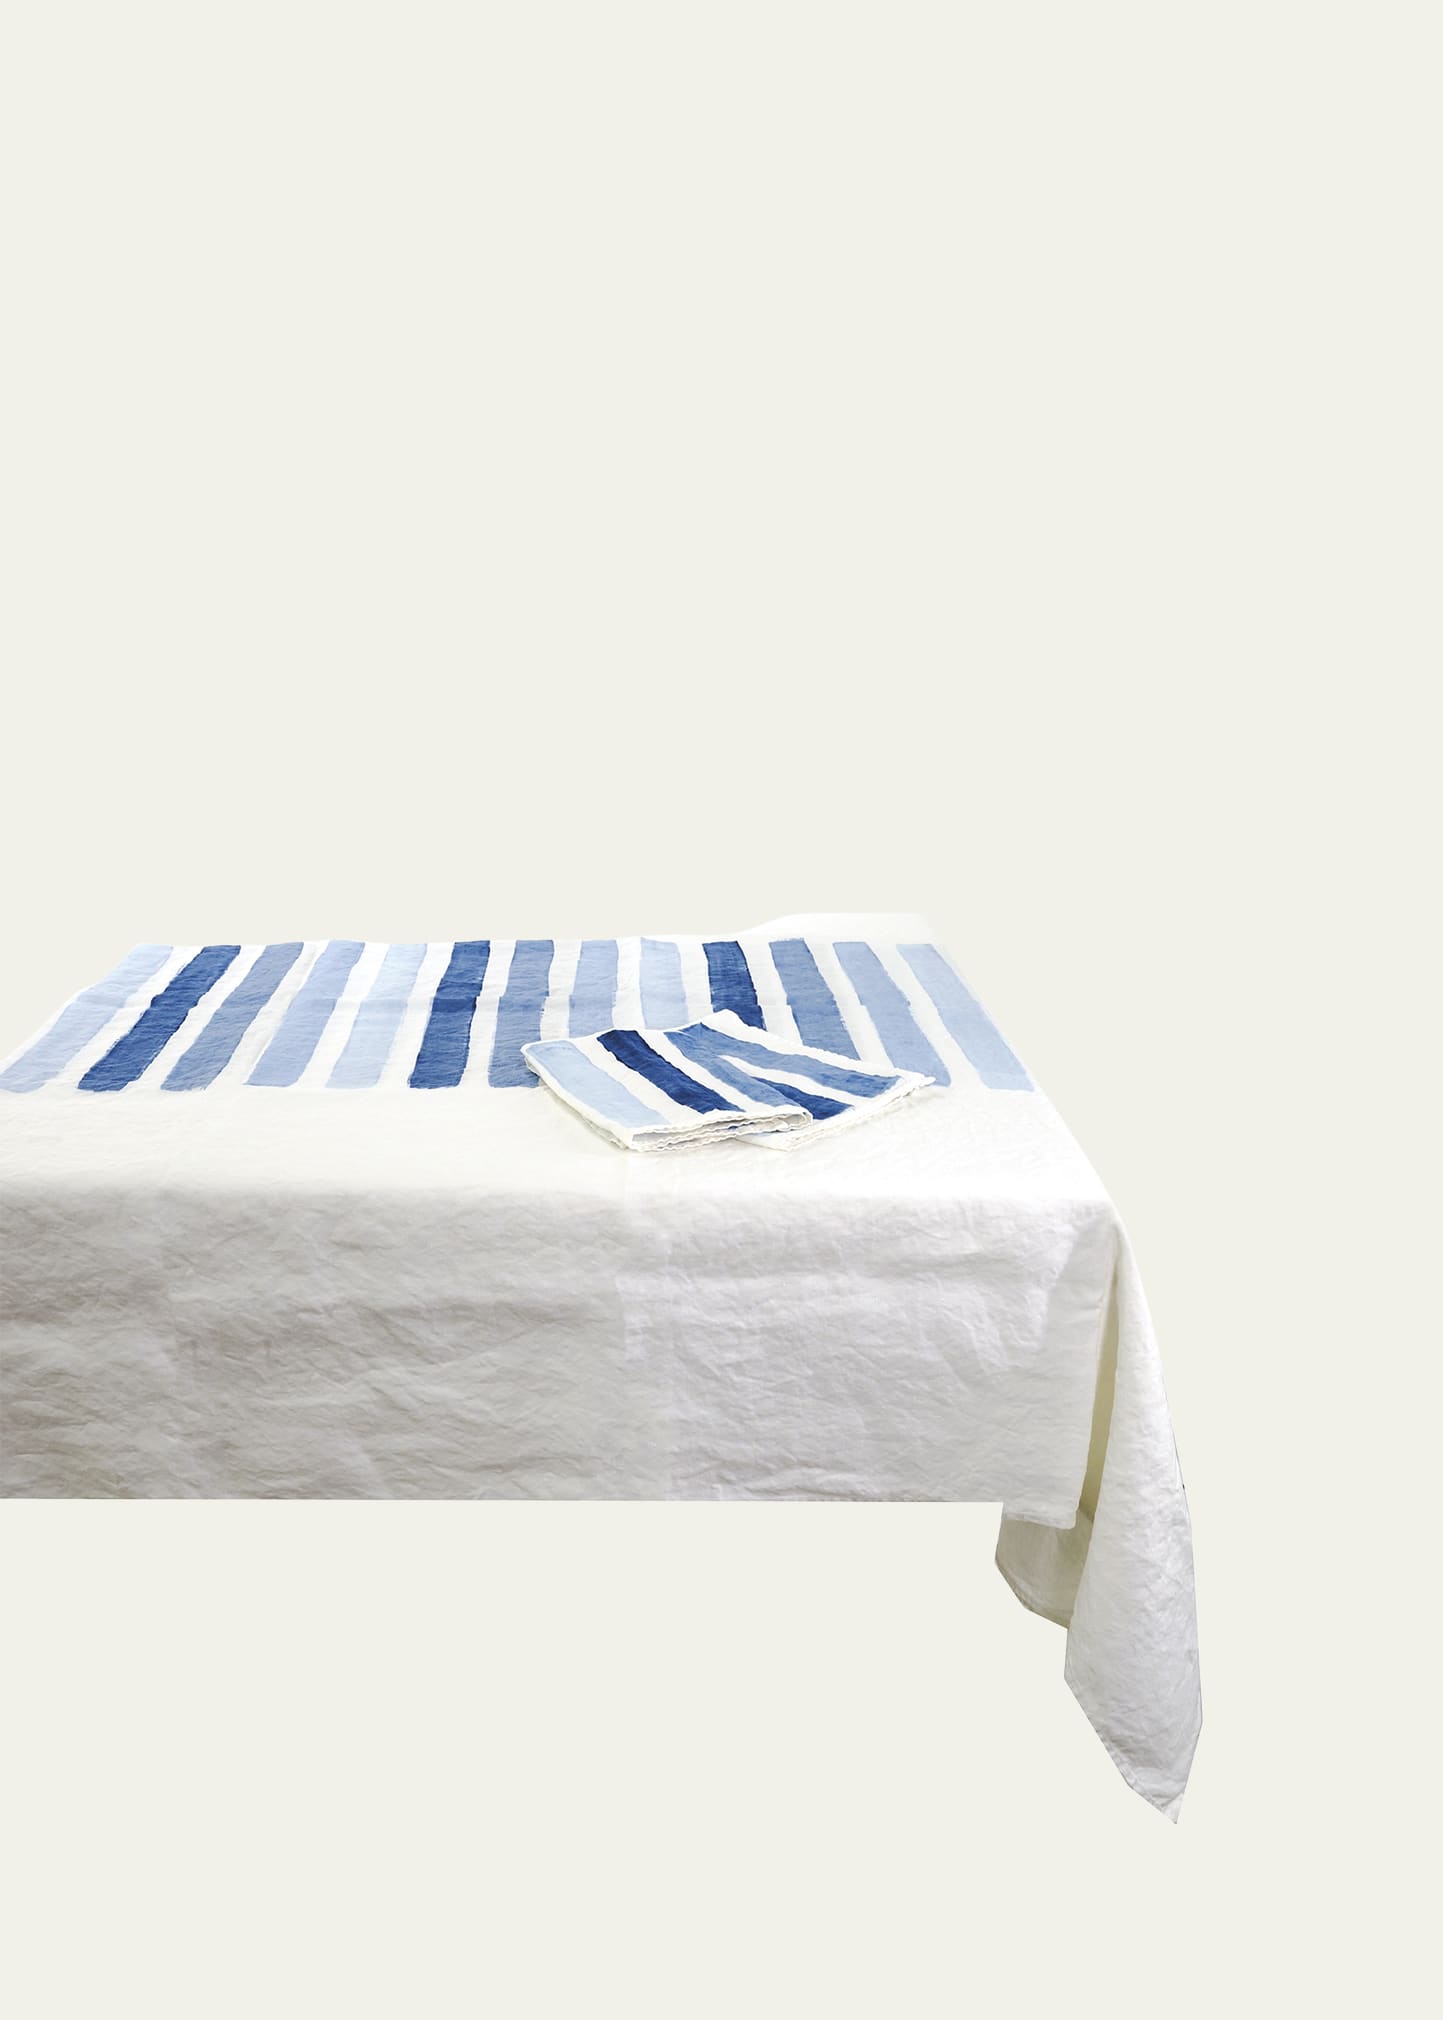 Shop Stamperia Bertozzi Gammacolor Blues Linen Tablecloth